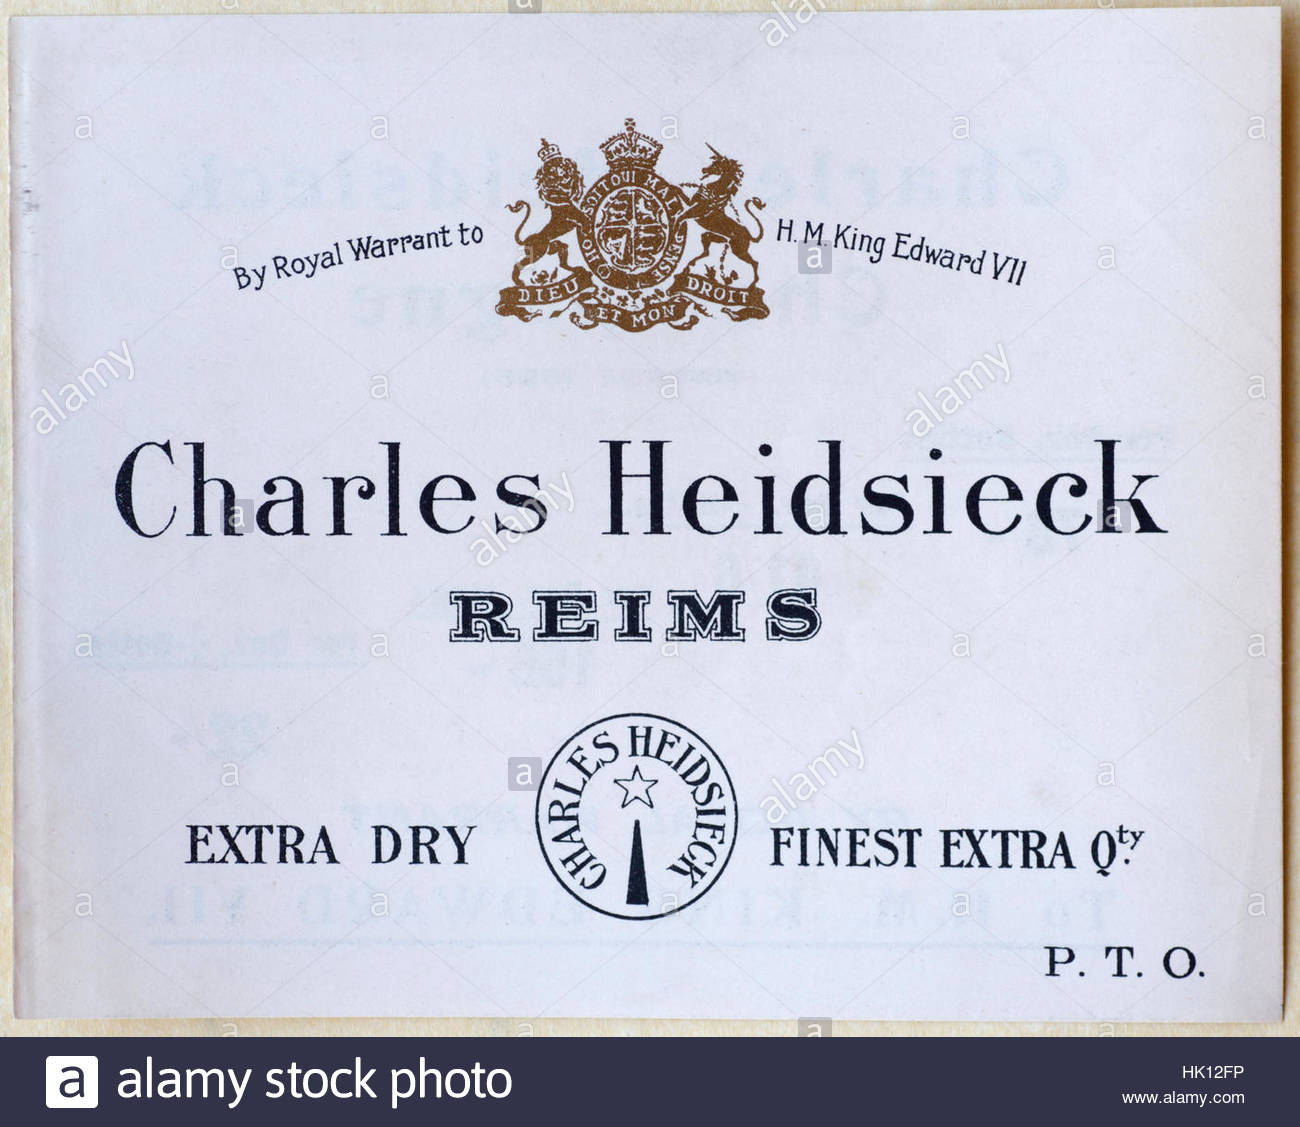 Charles Heidsieck Reims publicitaire, à partir de 1900 Banque D'Images